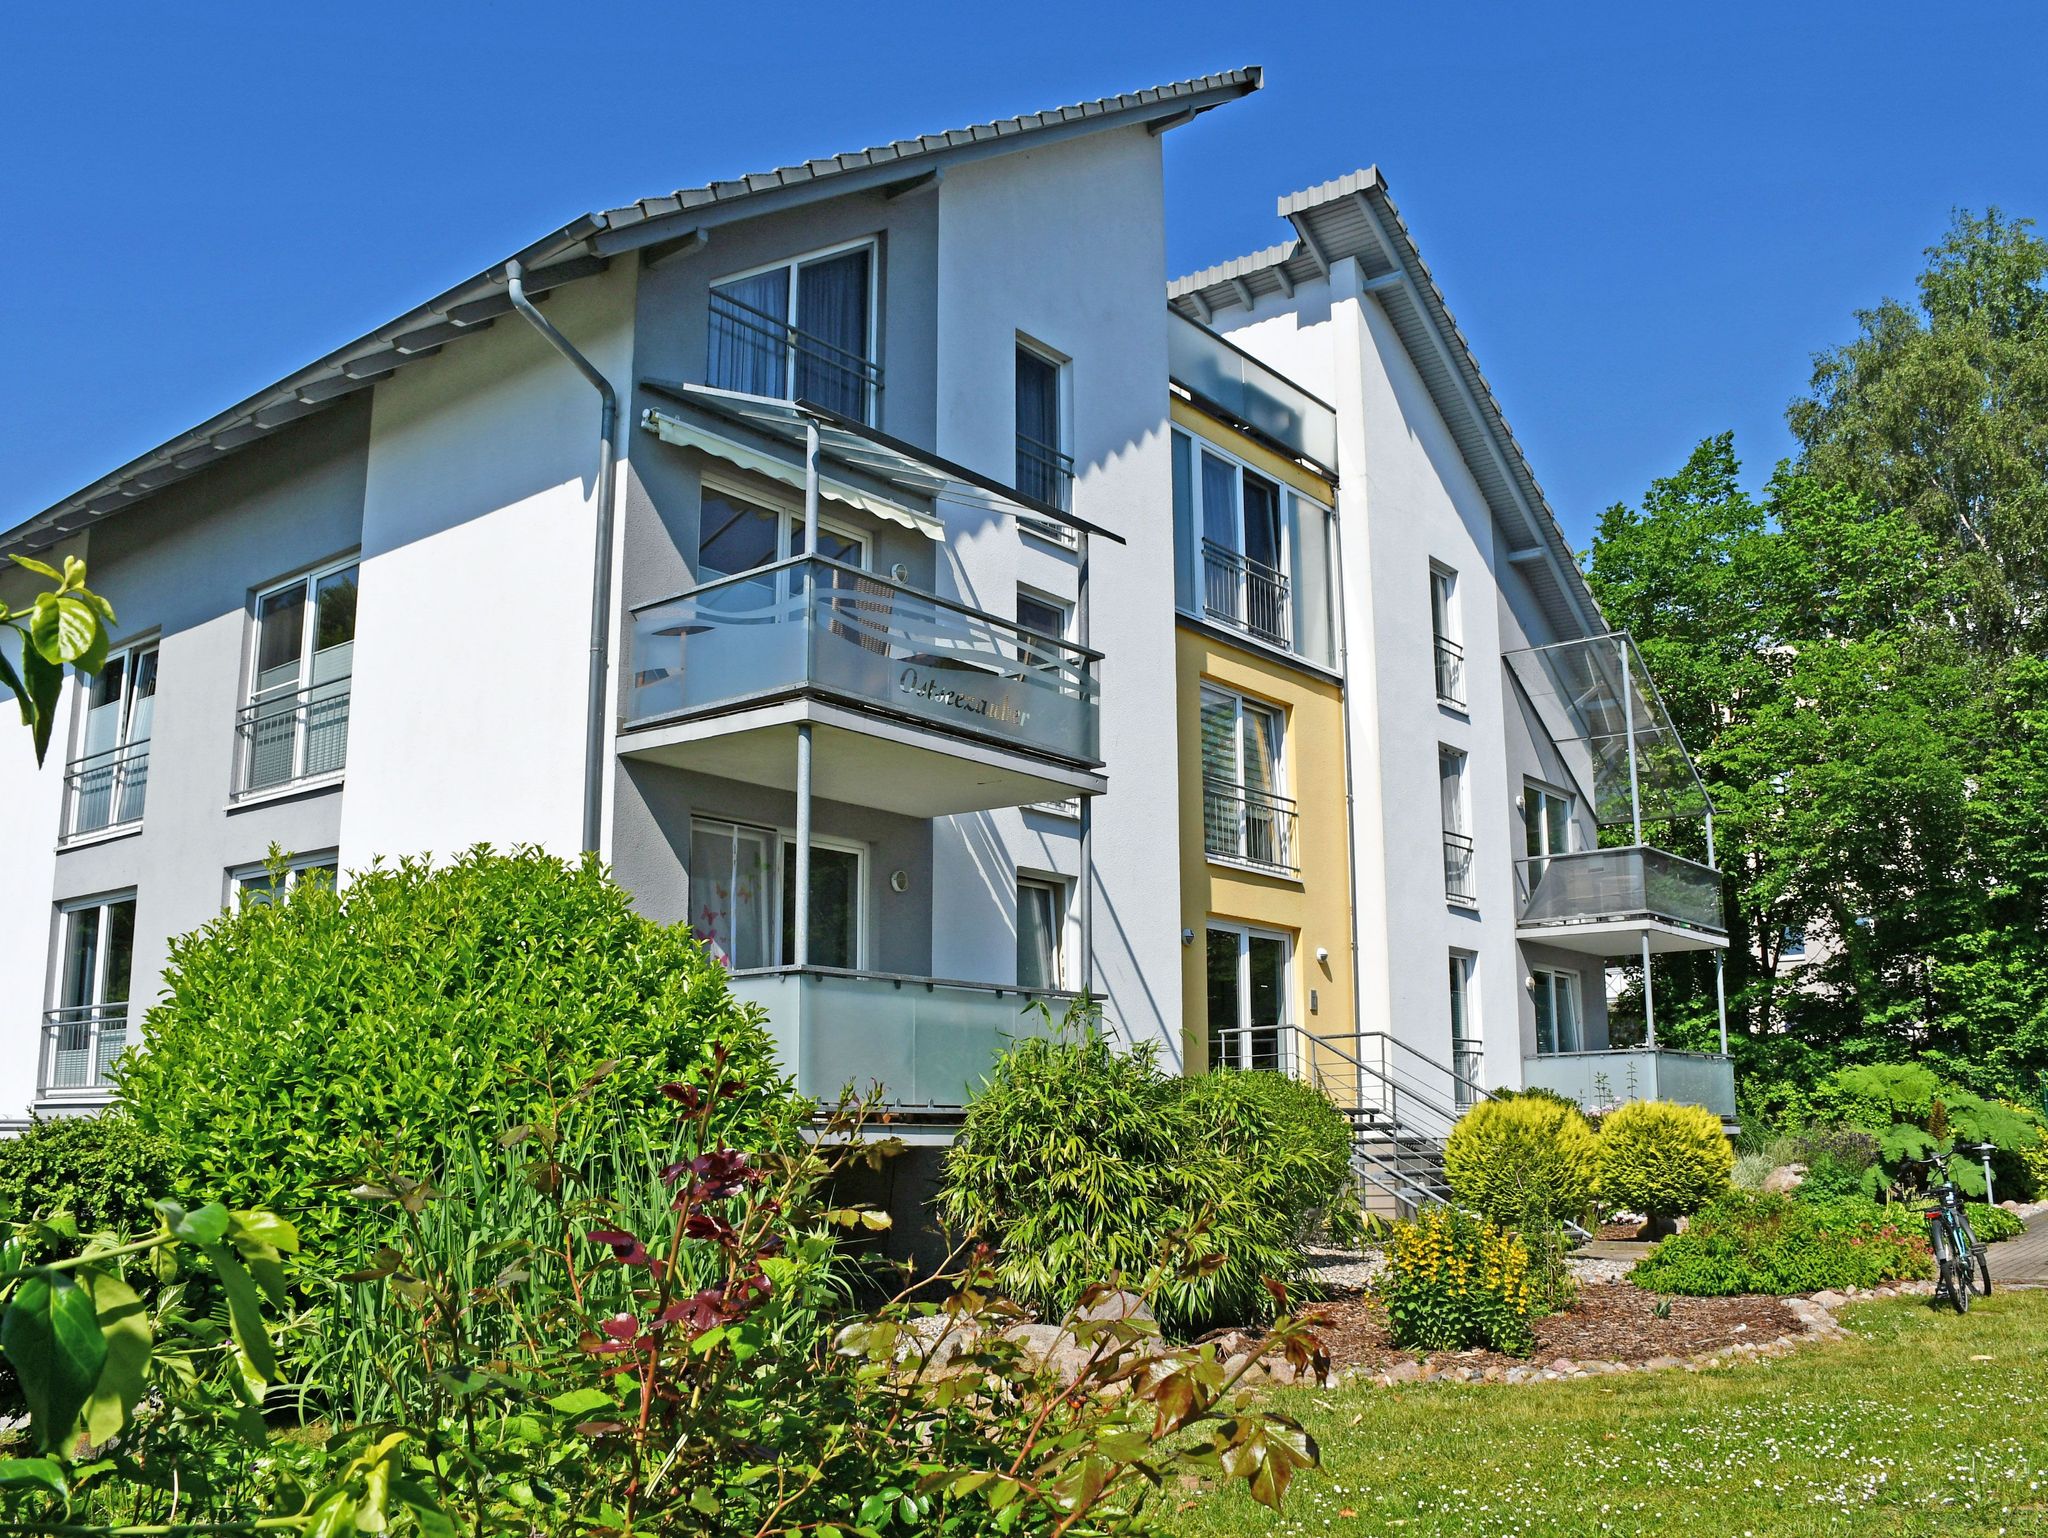 Ferienappartement Mönchgut mit Balkonterrasse